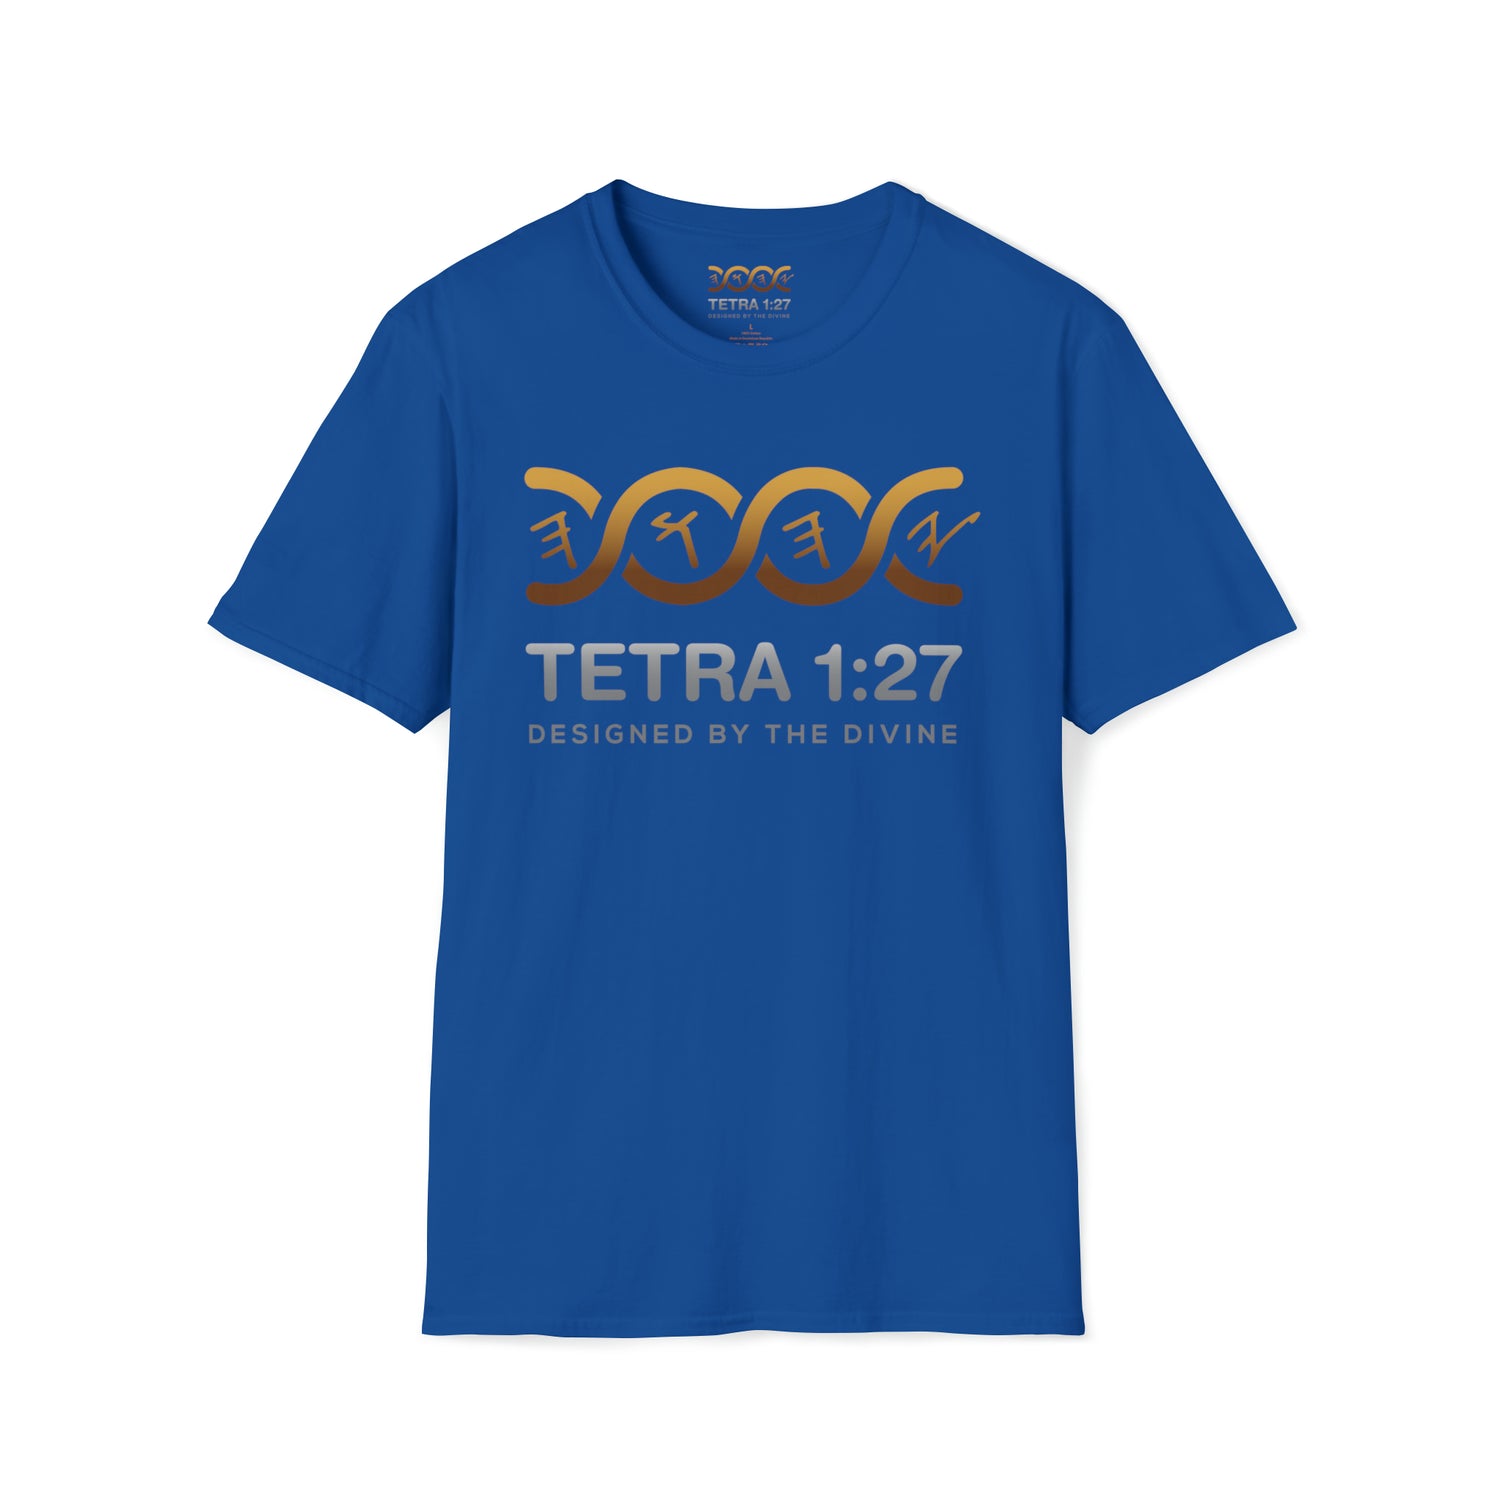 Tetra Classic T-Shirt – Tetra 1:27